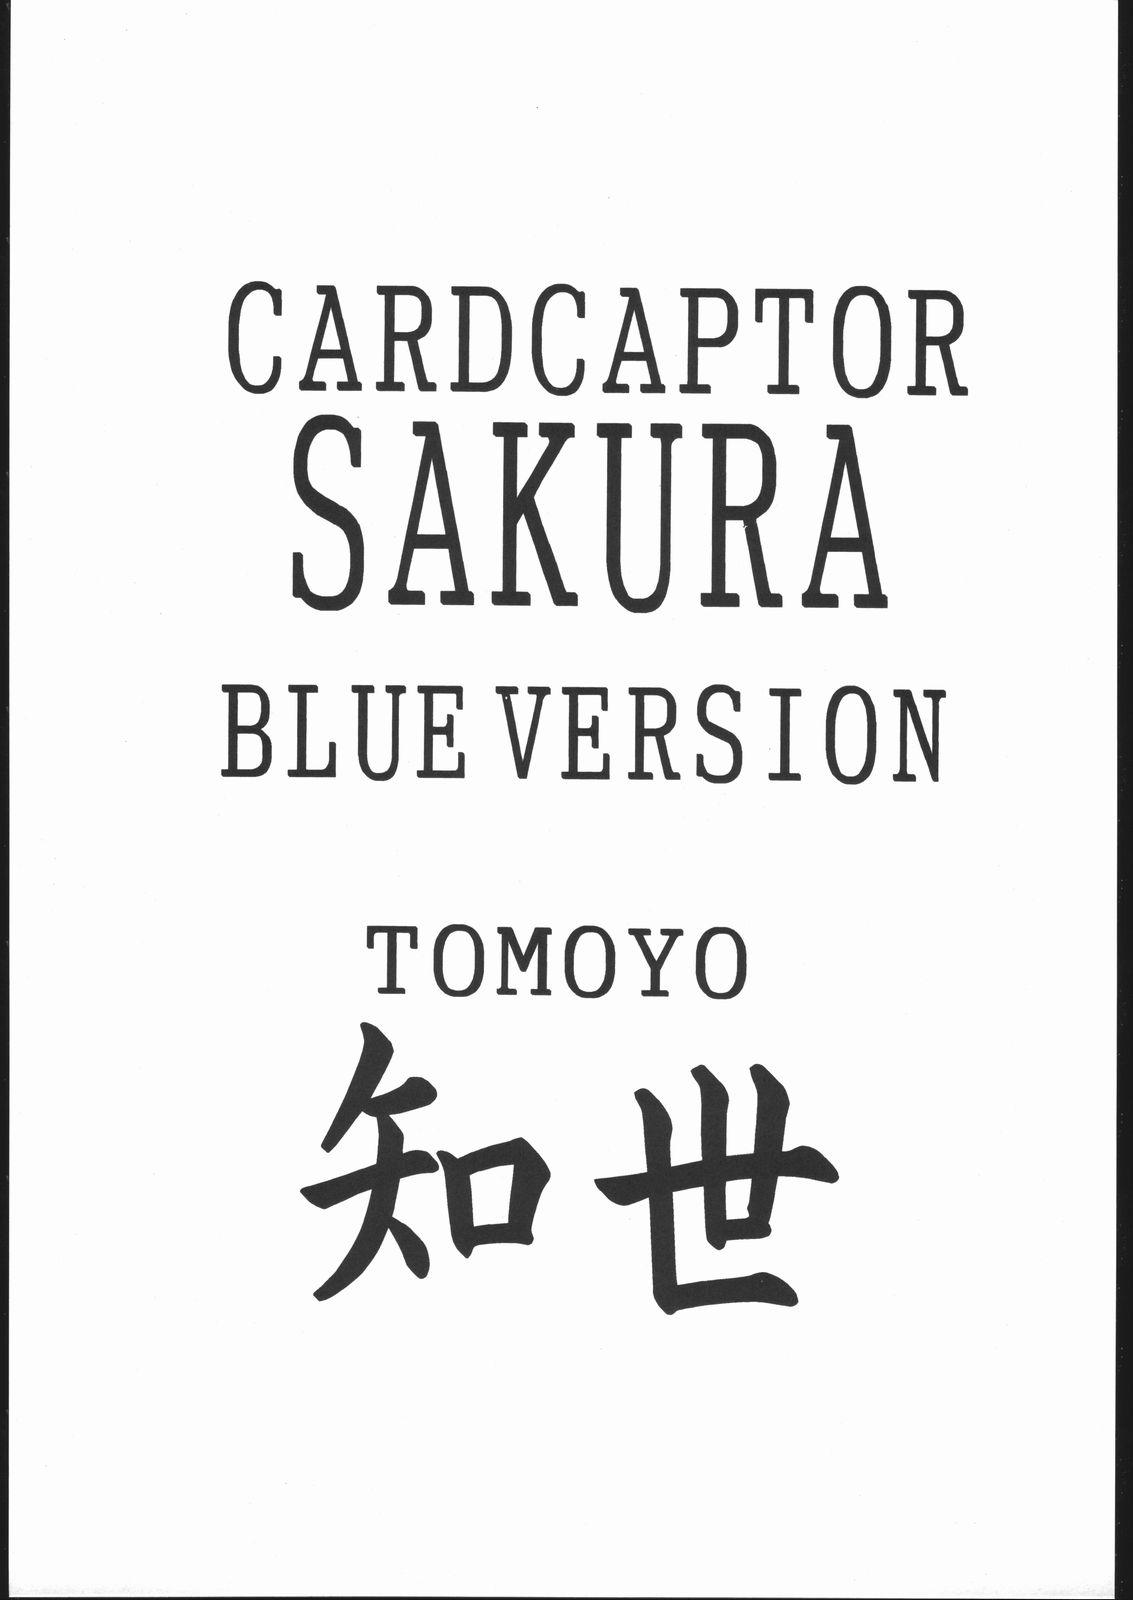 Load Card Captor Sakura Blue Version - Cardcaptor sakura Ballbusting - Page 2